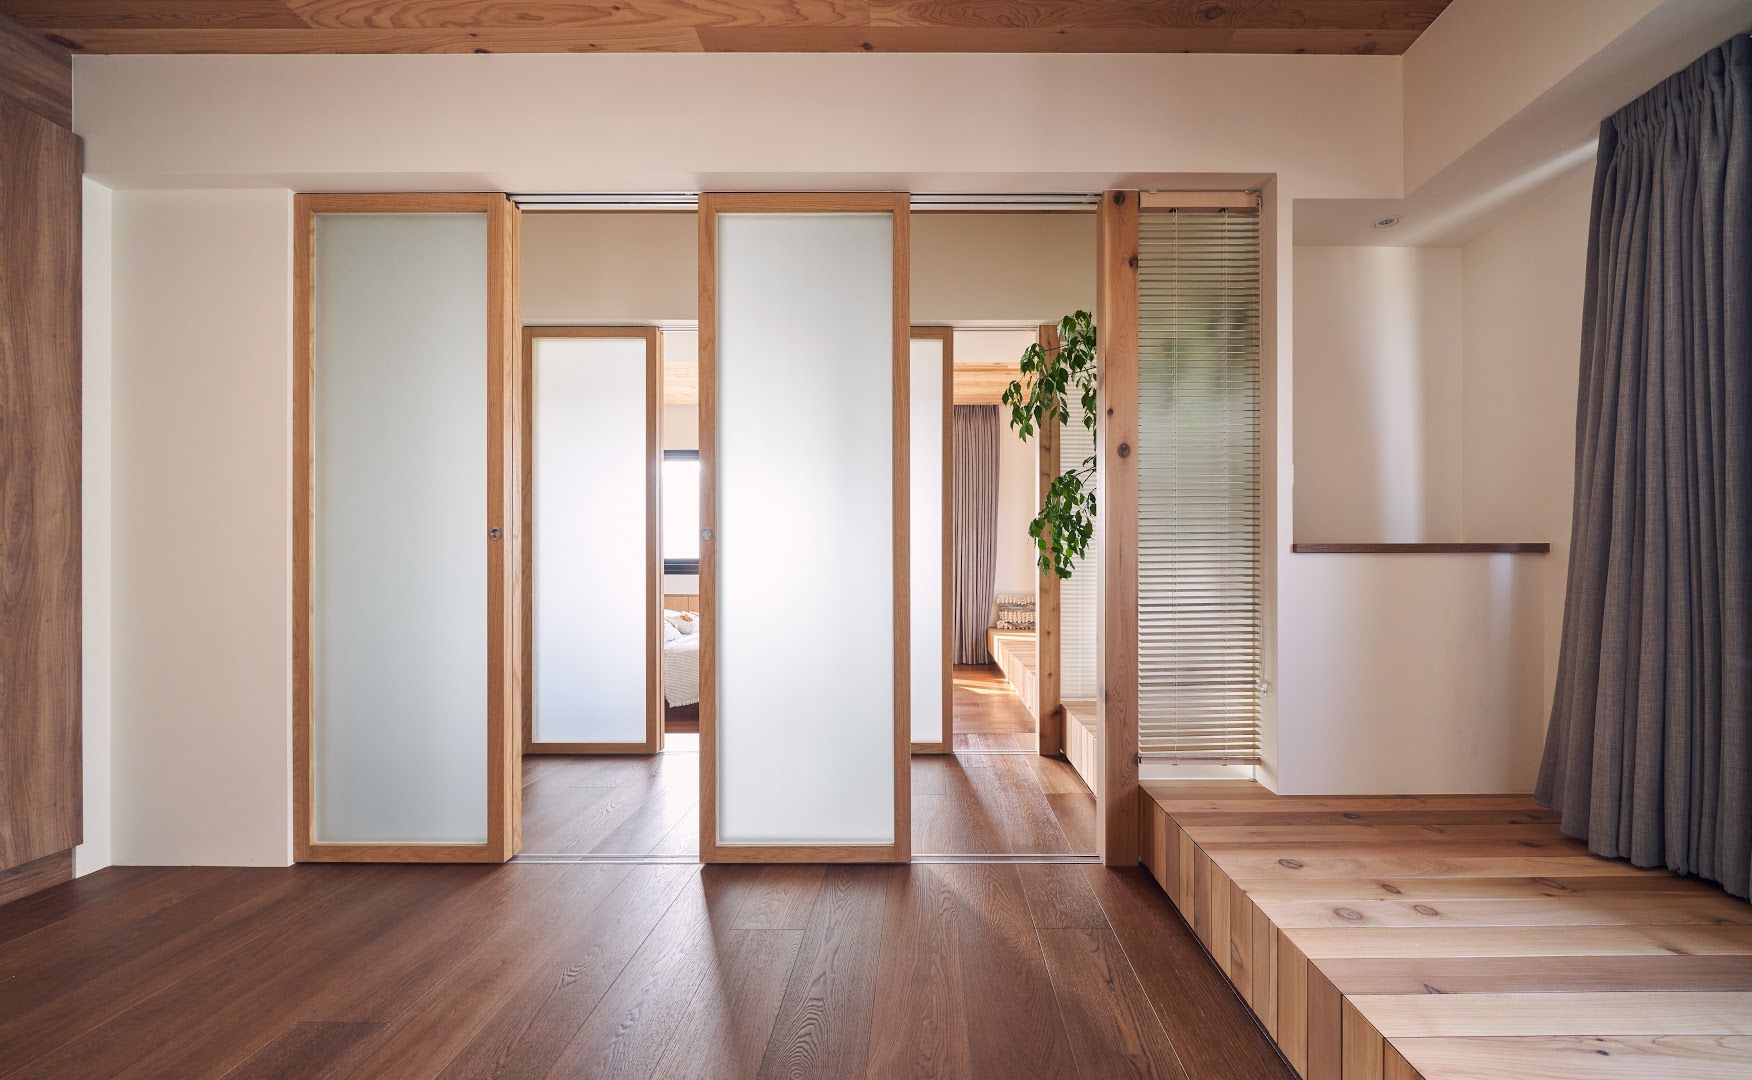 Có một phòng kiểu Nhật ở giữa hai phòng ngủ để linh hoạt sử dụng khi cần